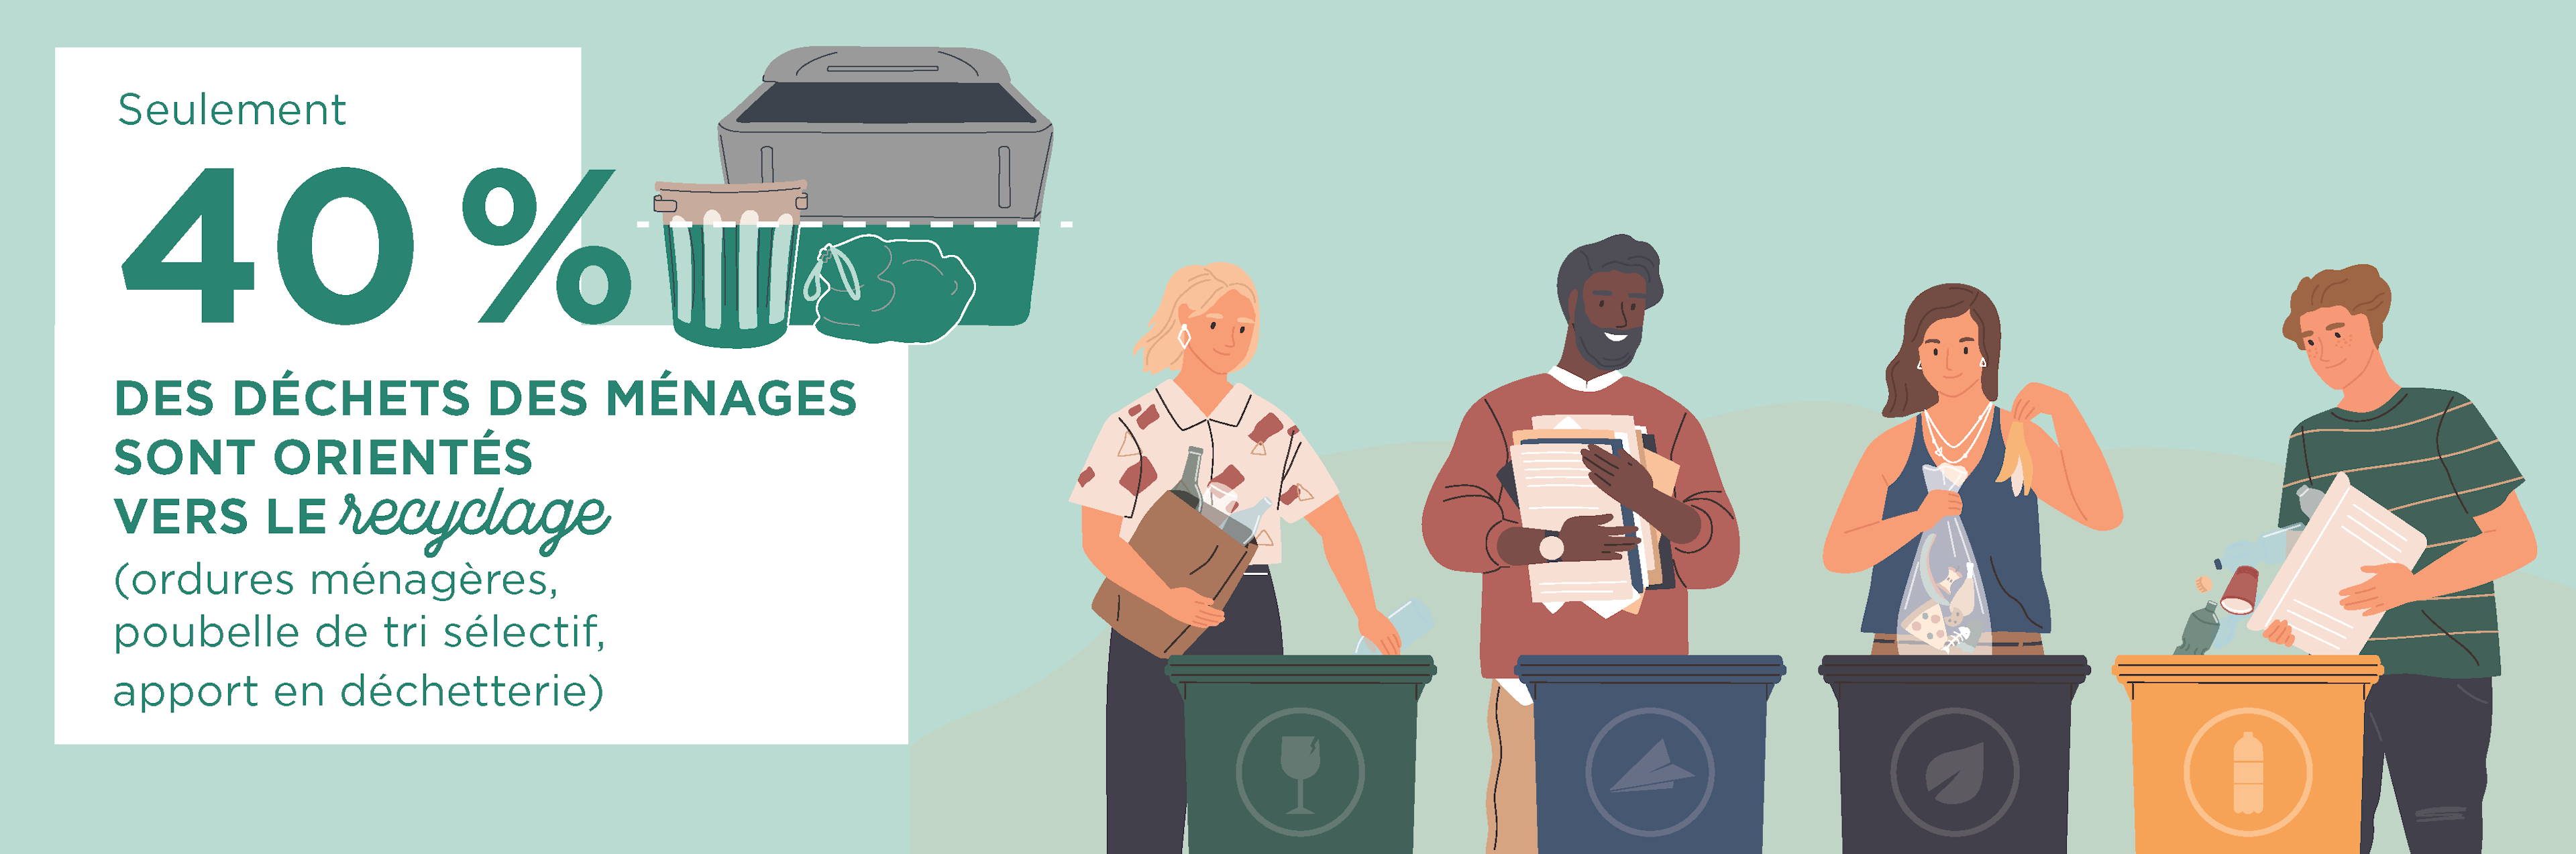 Infographie : seulement 40% des déchets ménagers sont recyclés